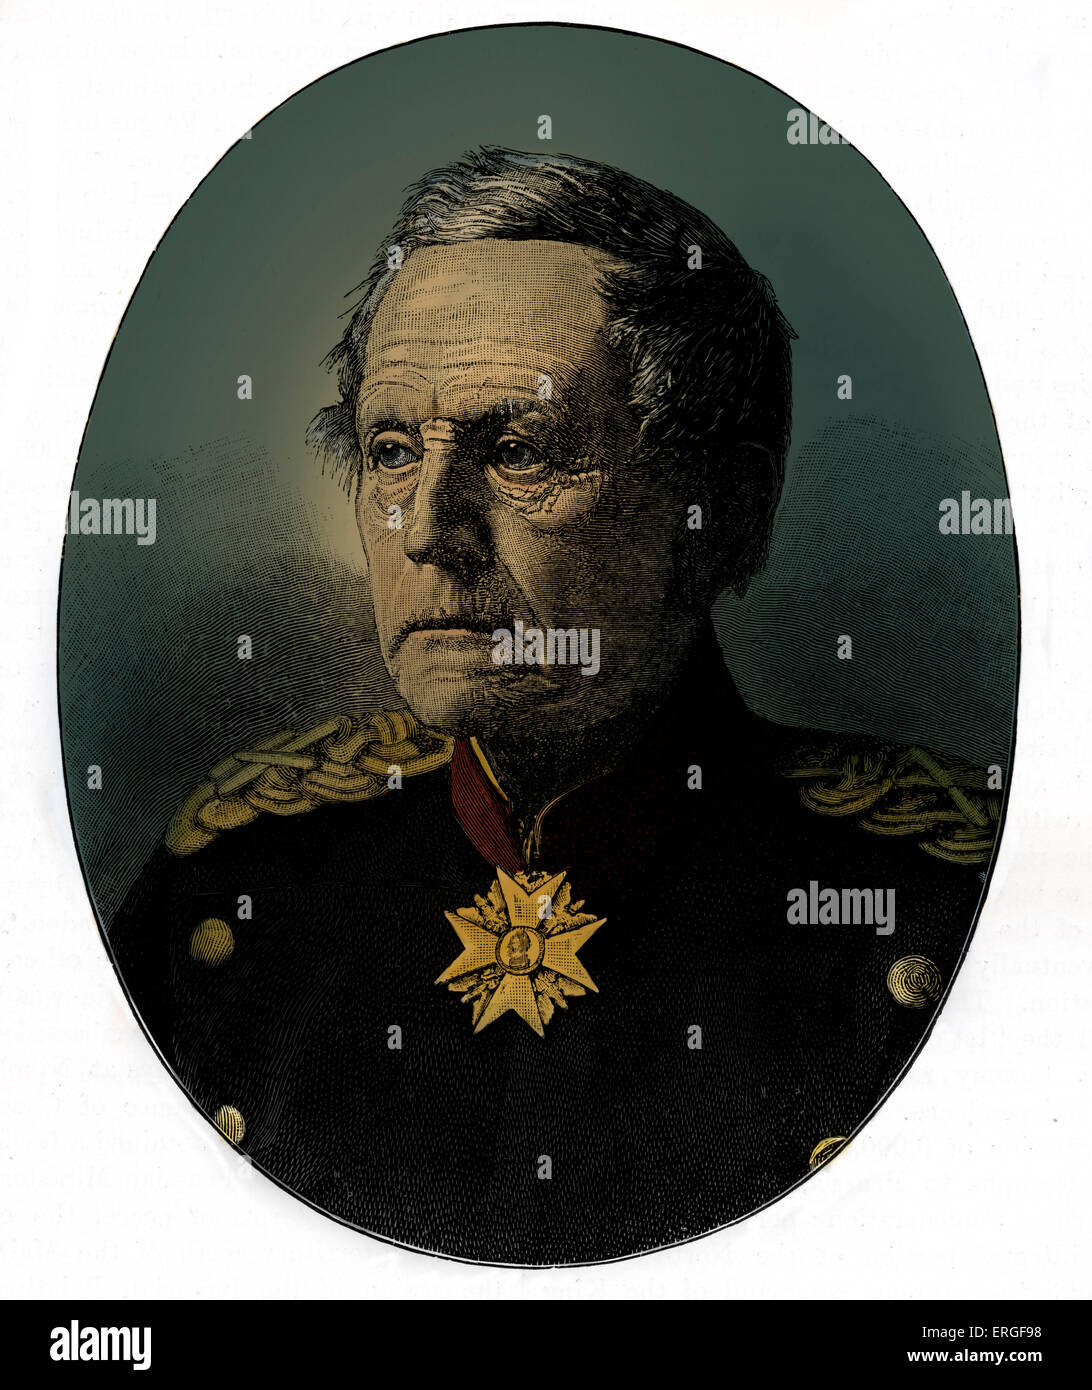 Helmuth von Moltke (der ältere) - Porträt. Deutscher Generalfeldmarschall und Chef des Stabes der preußischen Armee seit dreißig Jahren. 6 Stockfoto